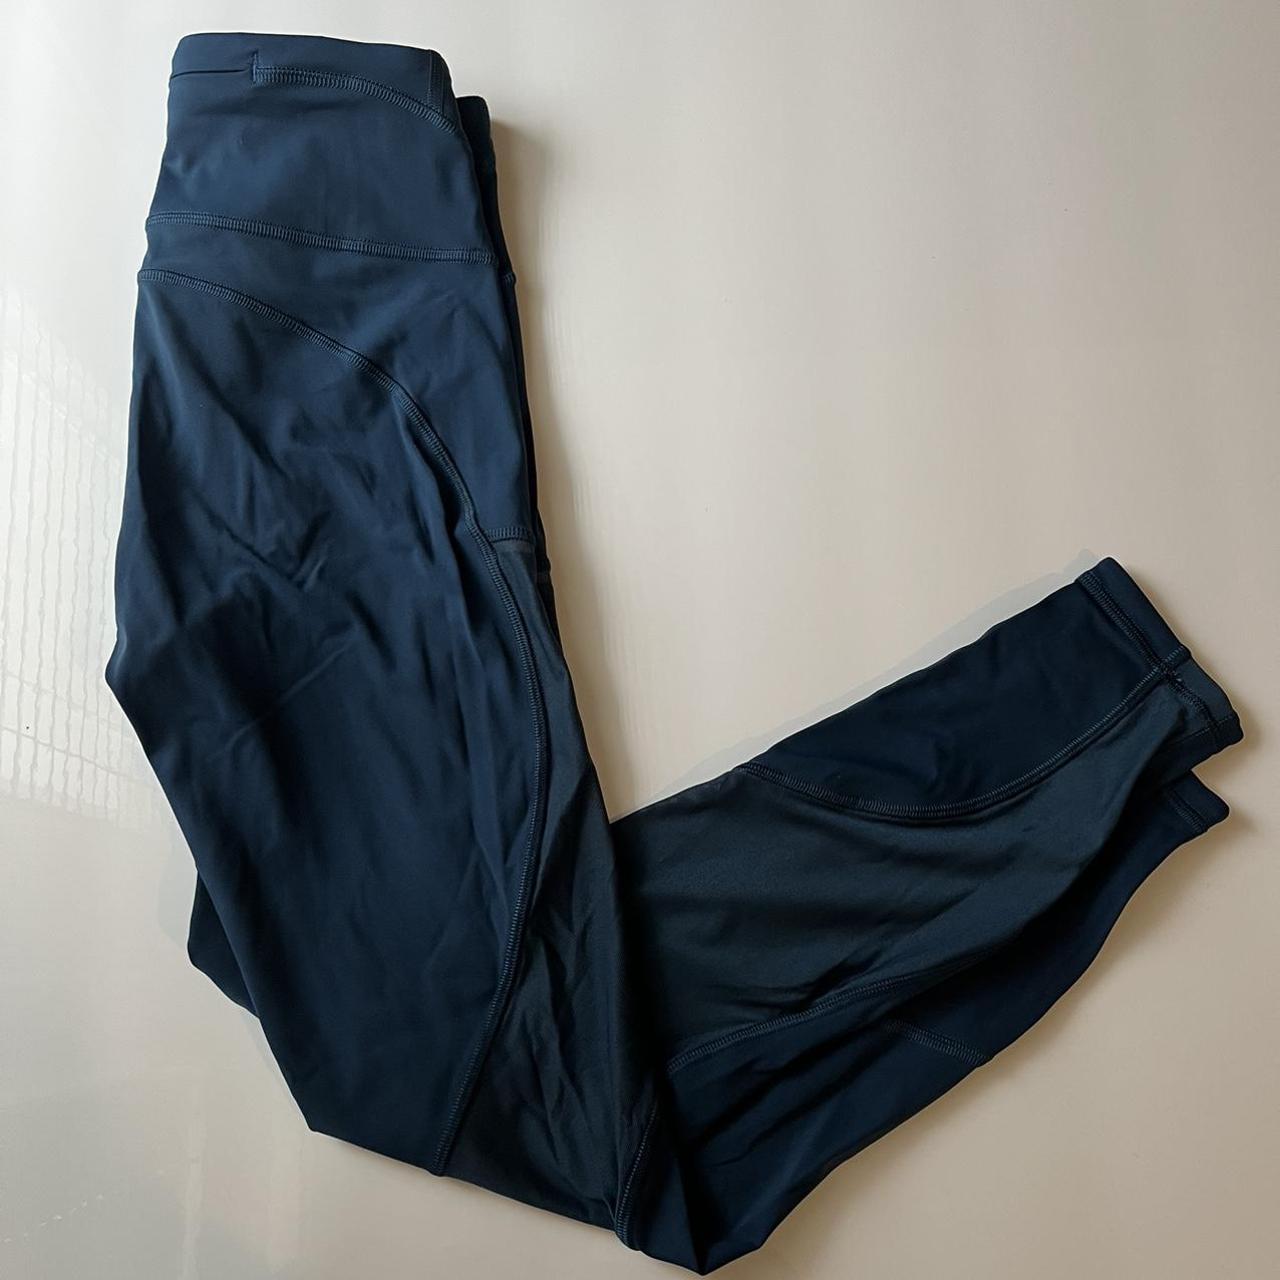 Navy blue Lululemon leggings! These are full length, - Depop